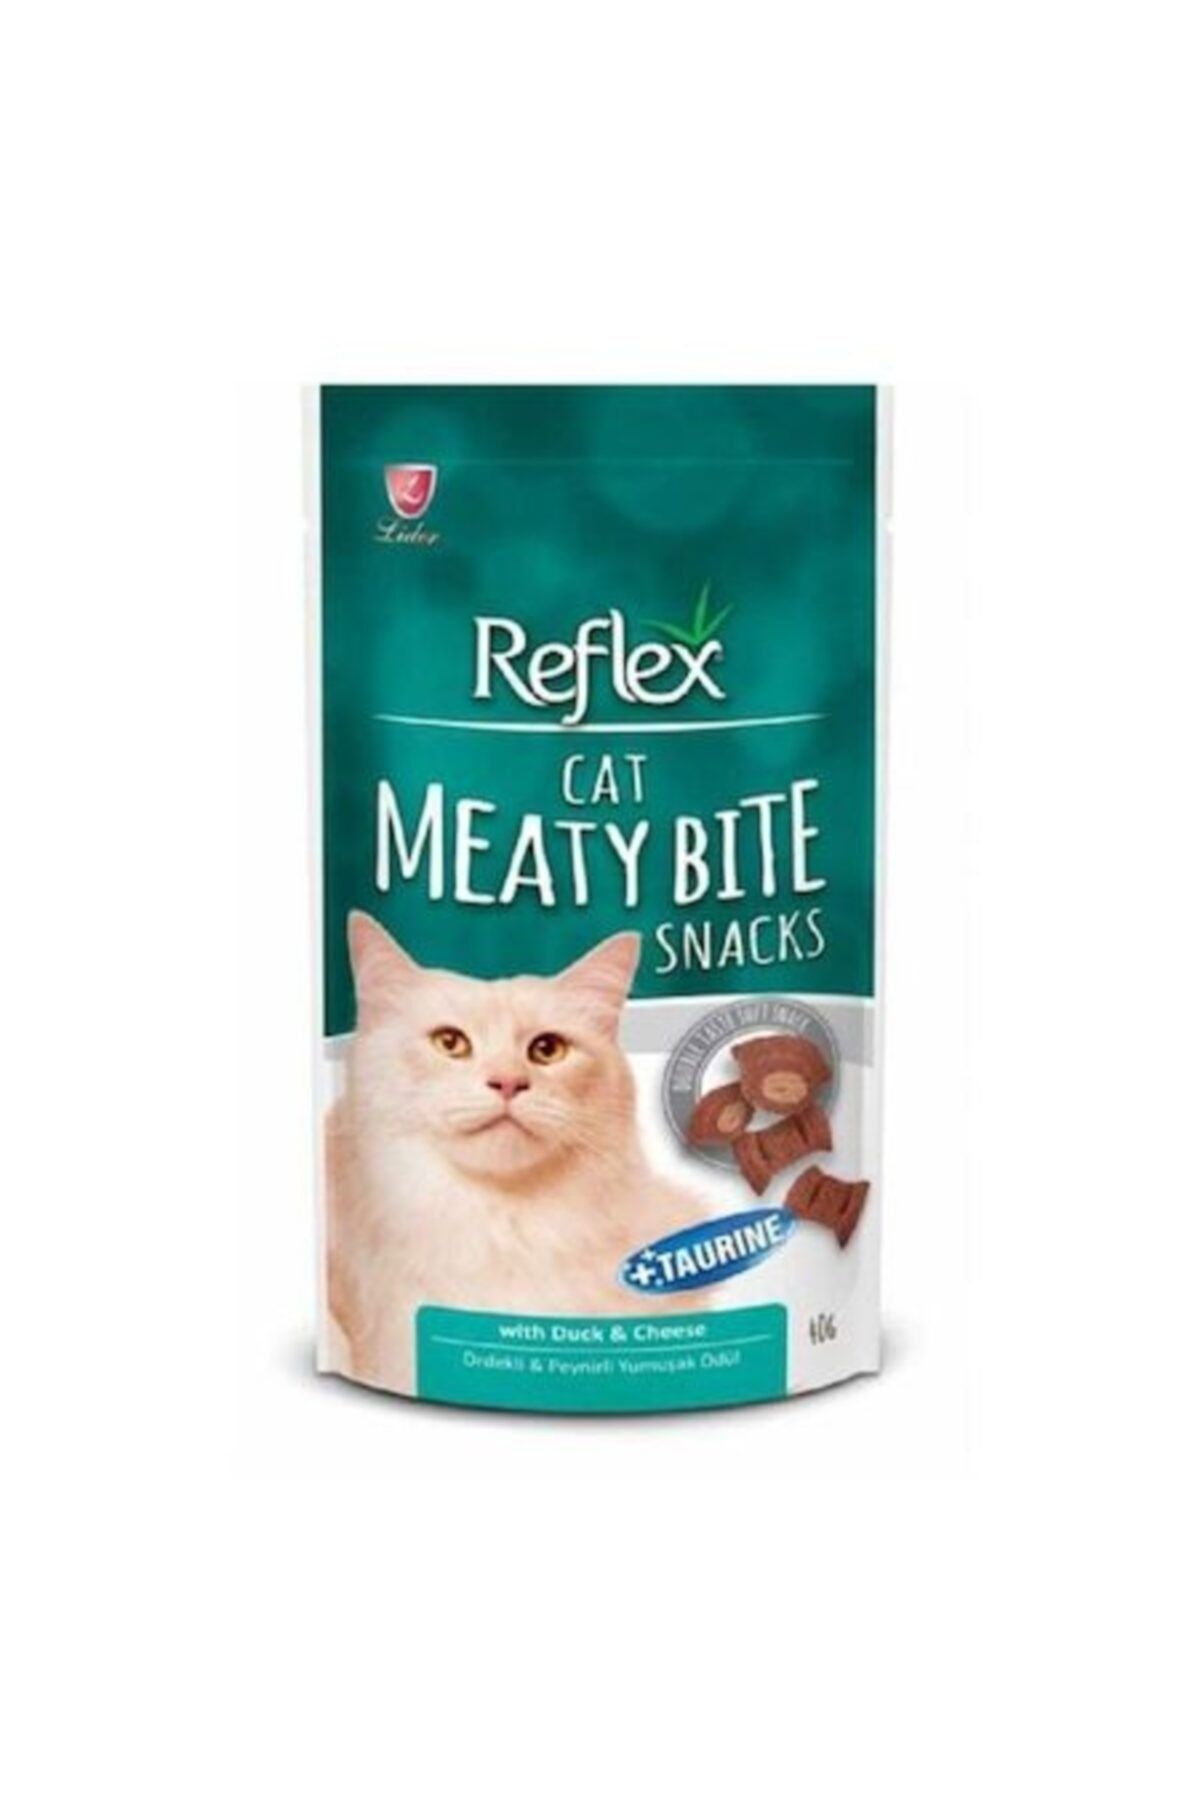 Reflex Ördekli Ve Peynirli Yumuşak Kedi Ödülü 40 Gr X 5 Adet